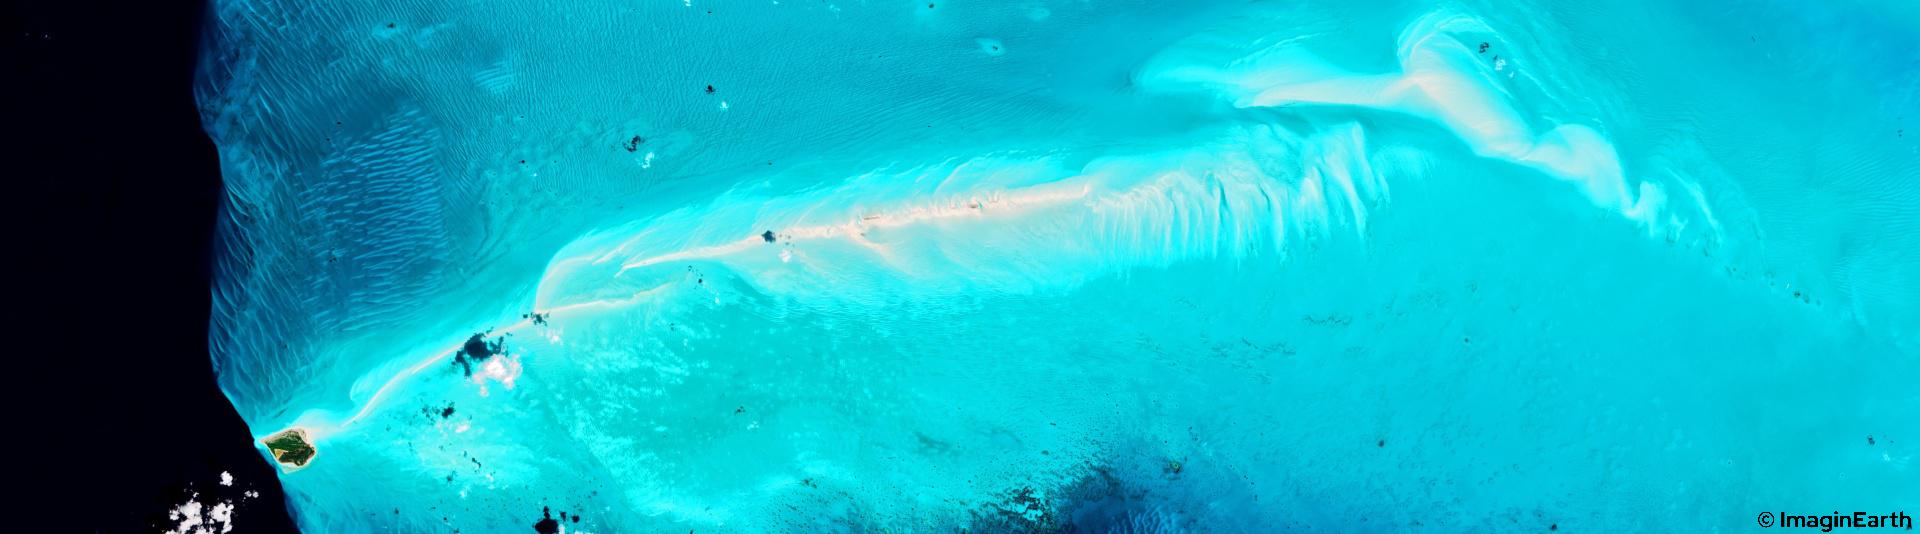 voyager iles bahamas belize, photo satellite